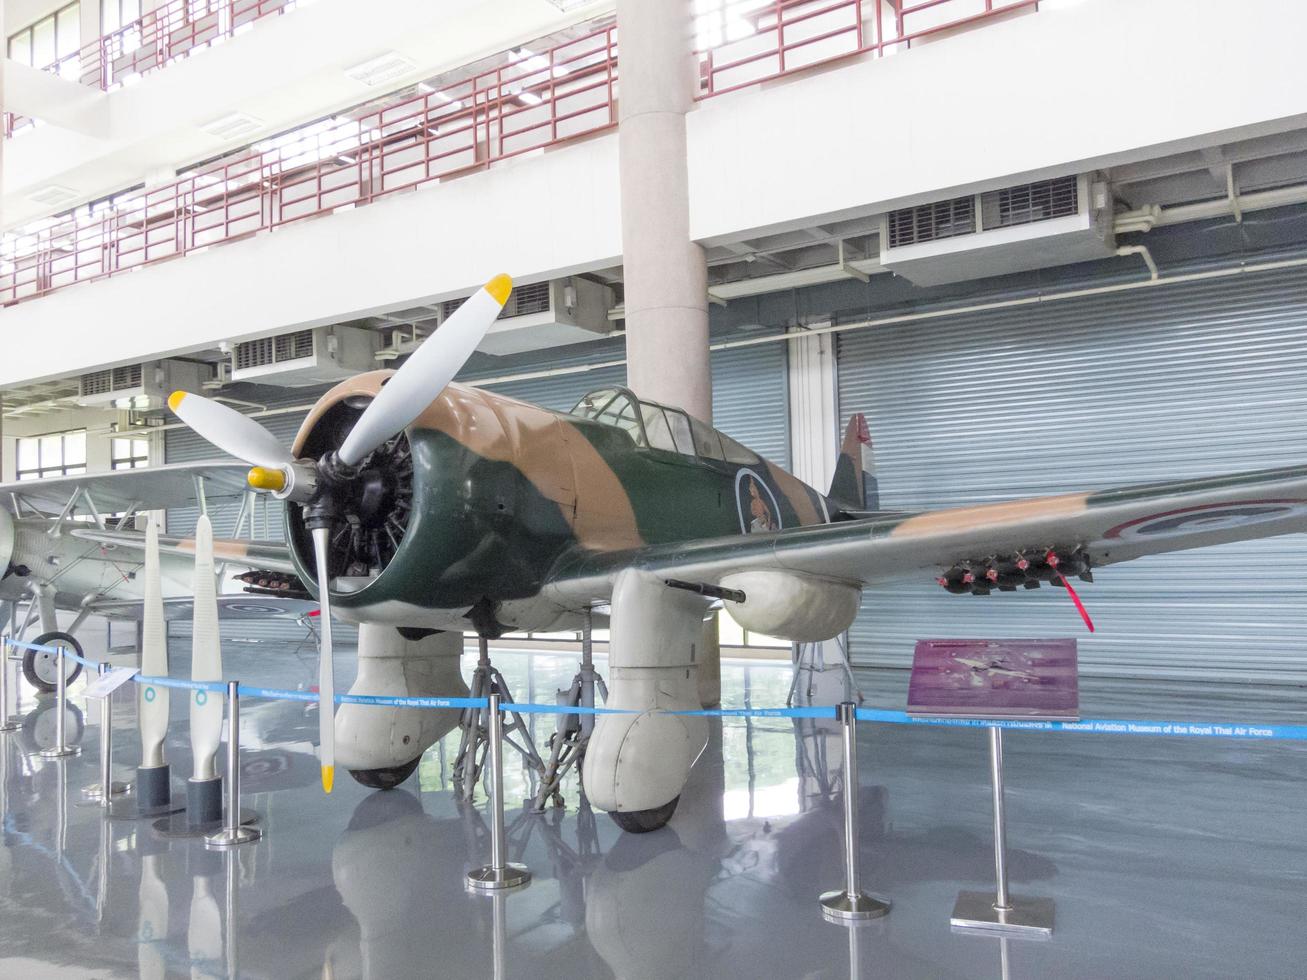 royal thai air force museum bangkokthailand18 augusti 2018 inne i byggnaden visa planet för lärande. den 18 augusti 2018 i Thailand. foto